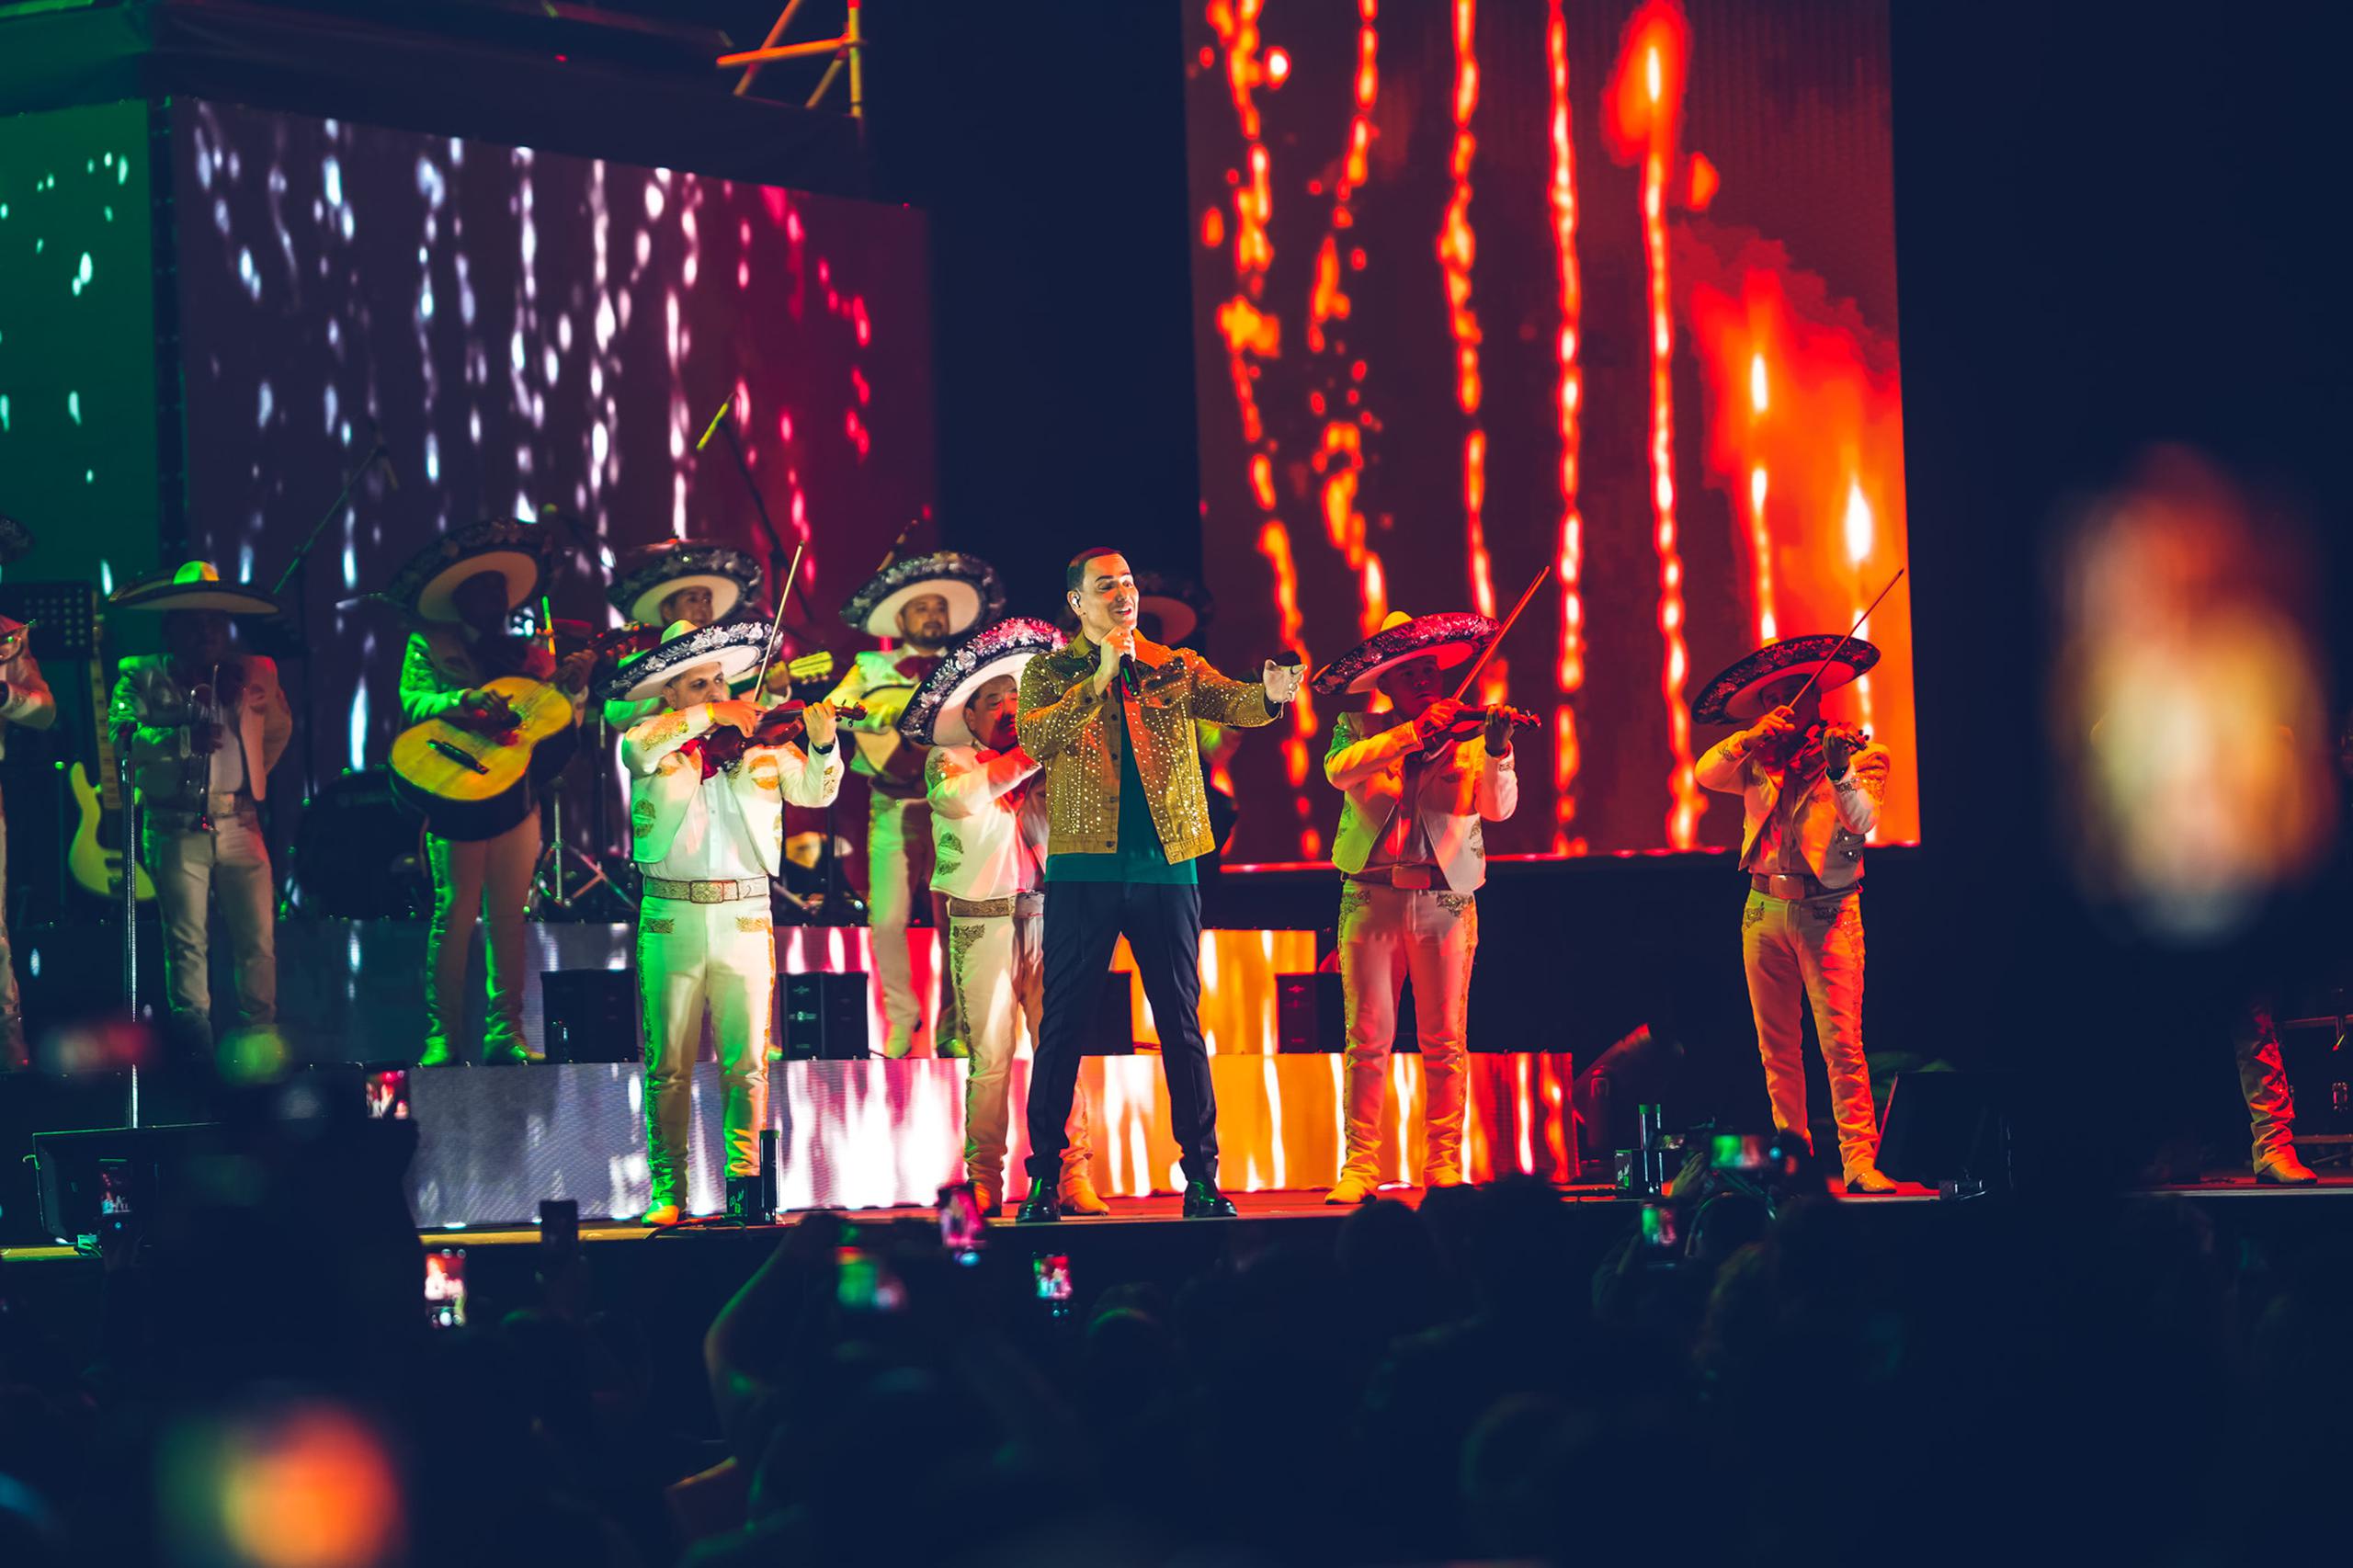 Como parte del espectáculo en Ciudad México, Víctor Manuelle estuvo acompañado del Mariachi Internacional México de Noche para interpretar los temas "Poco hombre" y "Volverás".